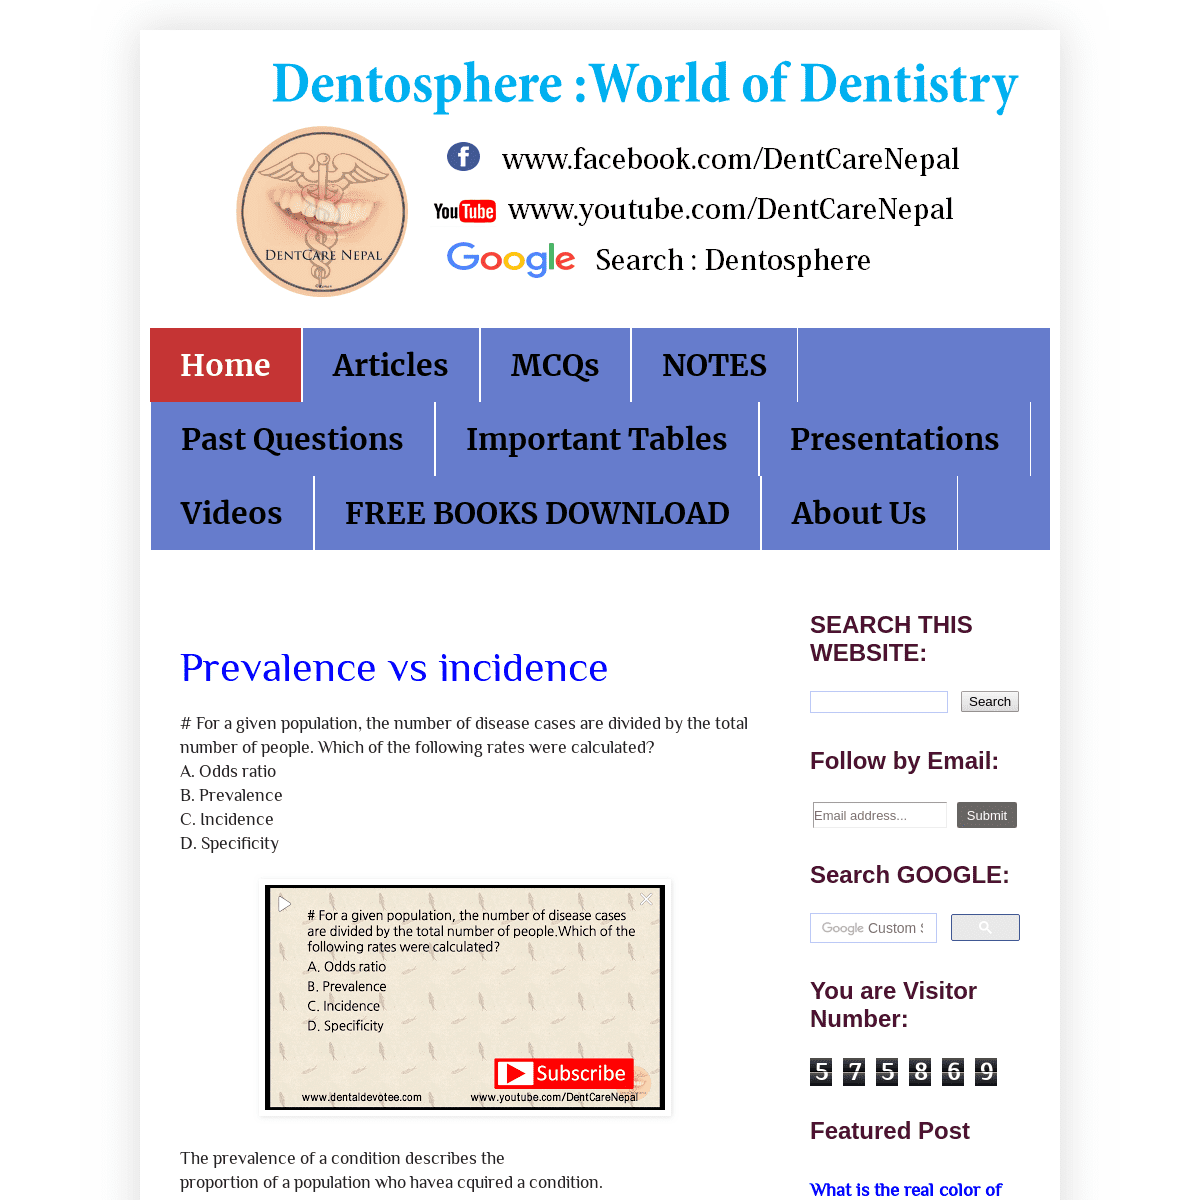 A complete backup of dentaldevotee.blogspot.com